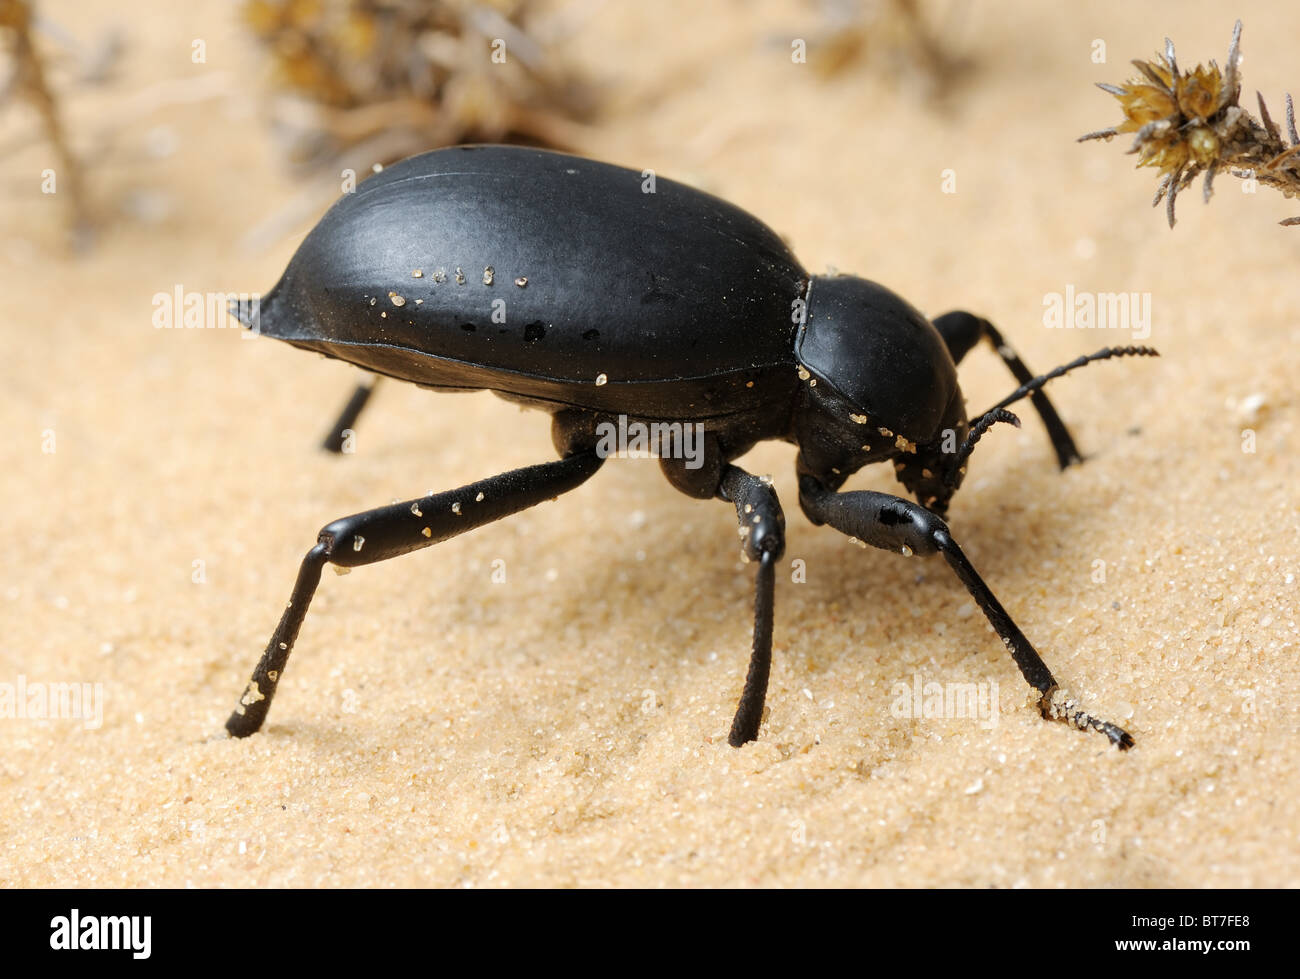 Darkling escarabajo sobre la arena Foto de stock